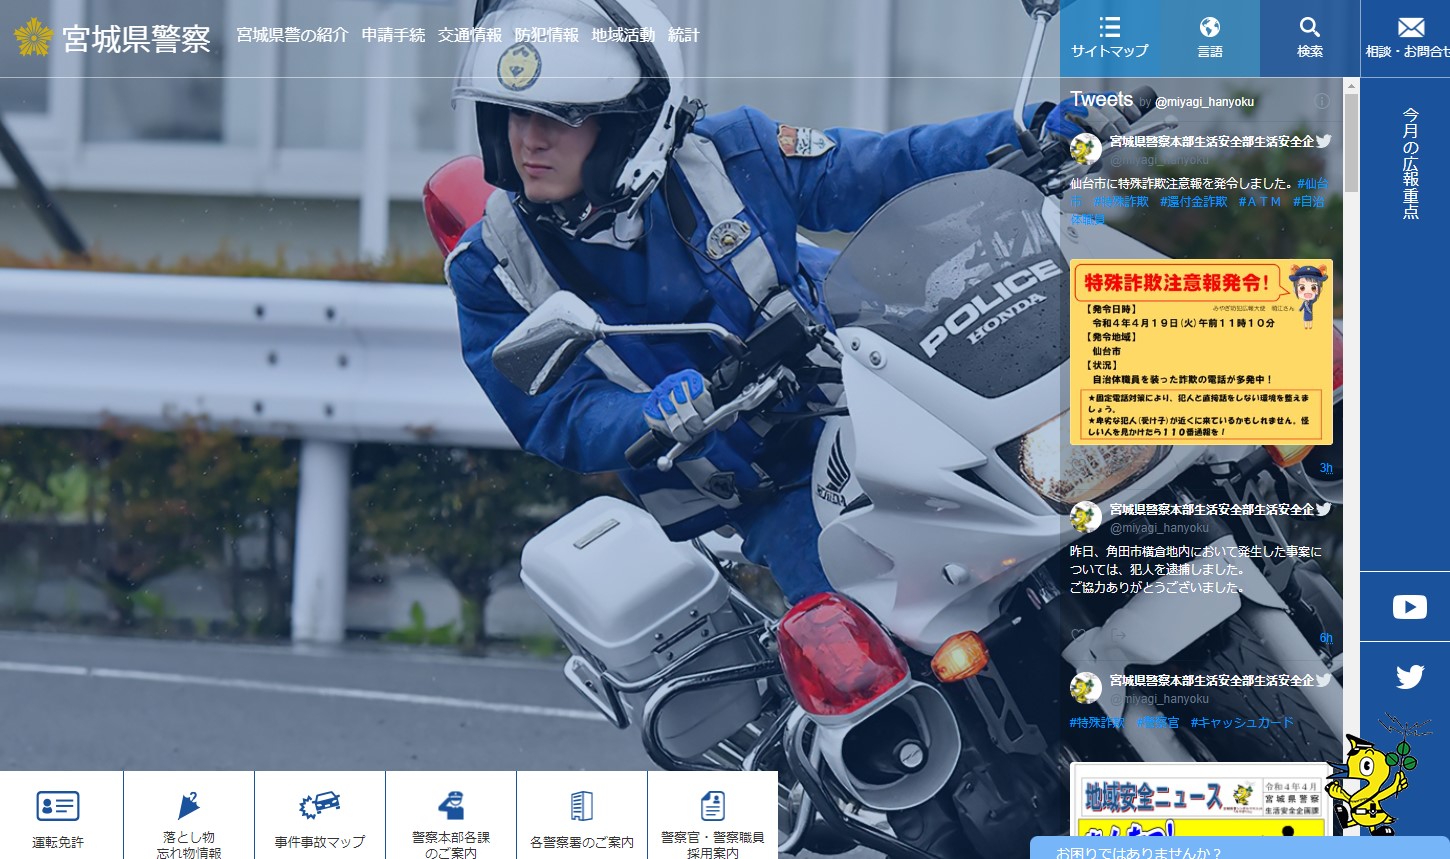 宮城県警察のホームページのキャプチャ画像